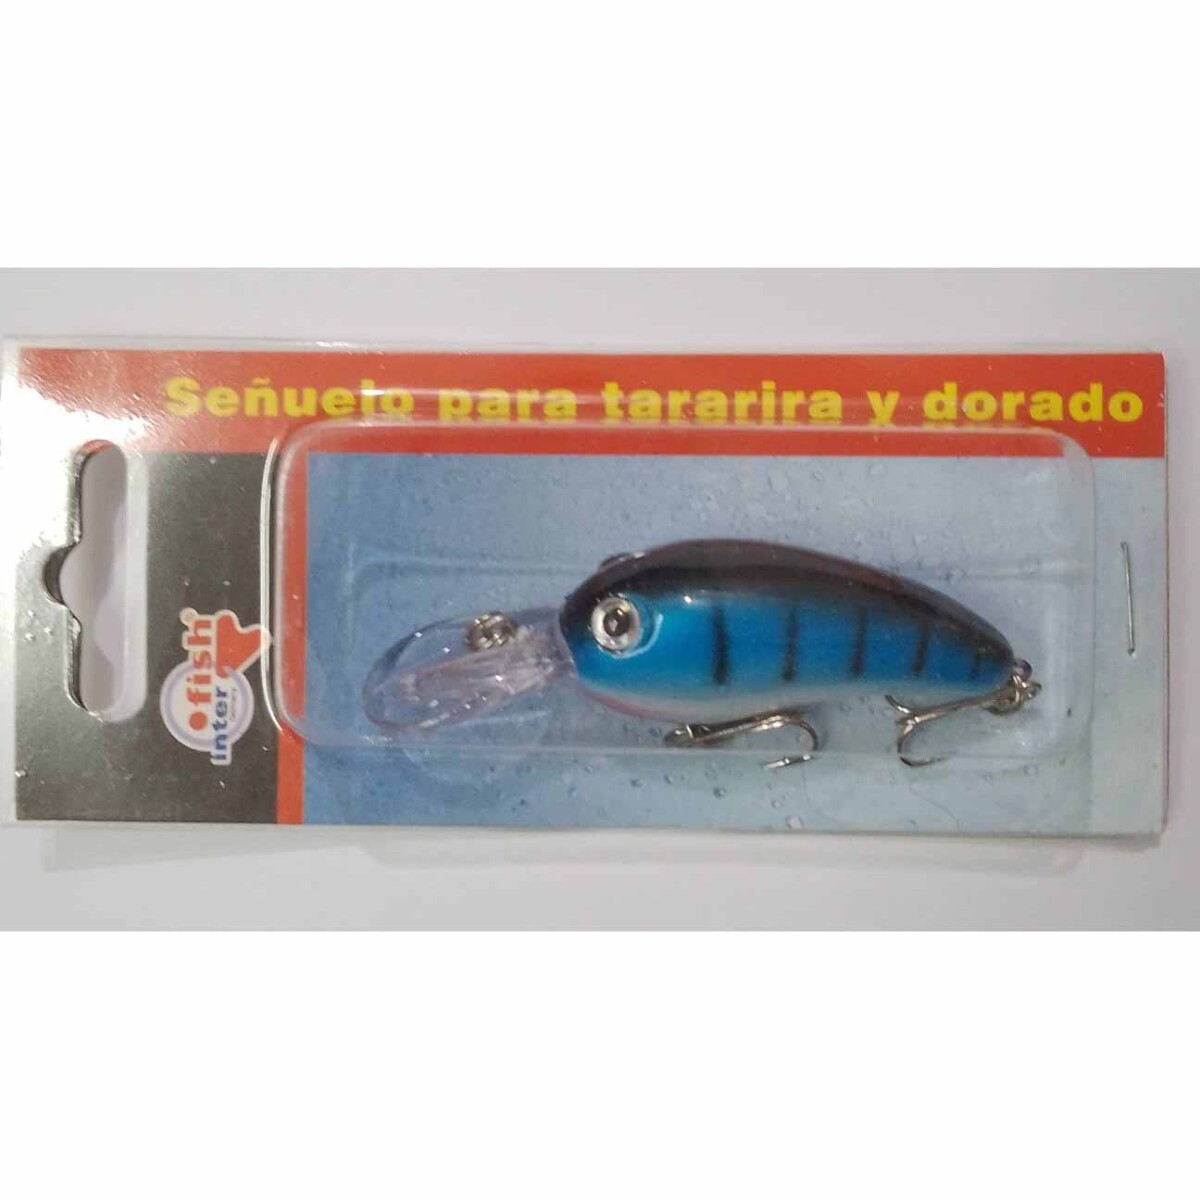 Señuelo Interfish S507 